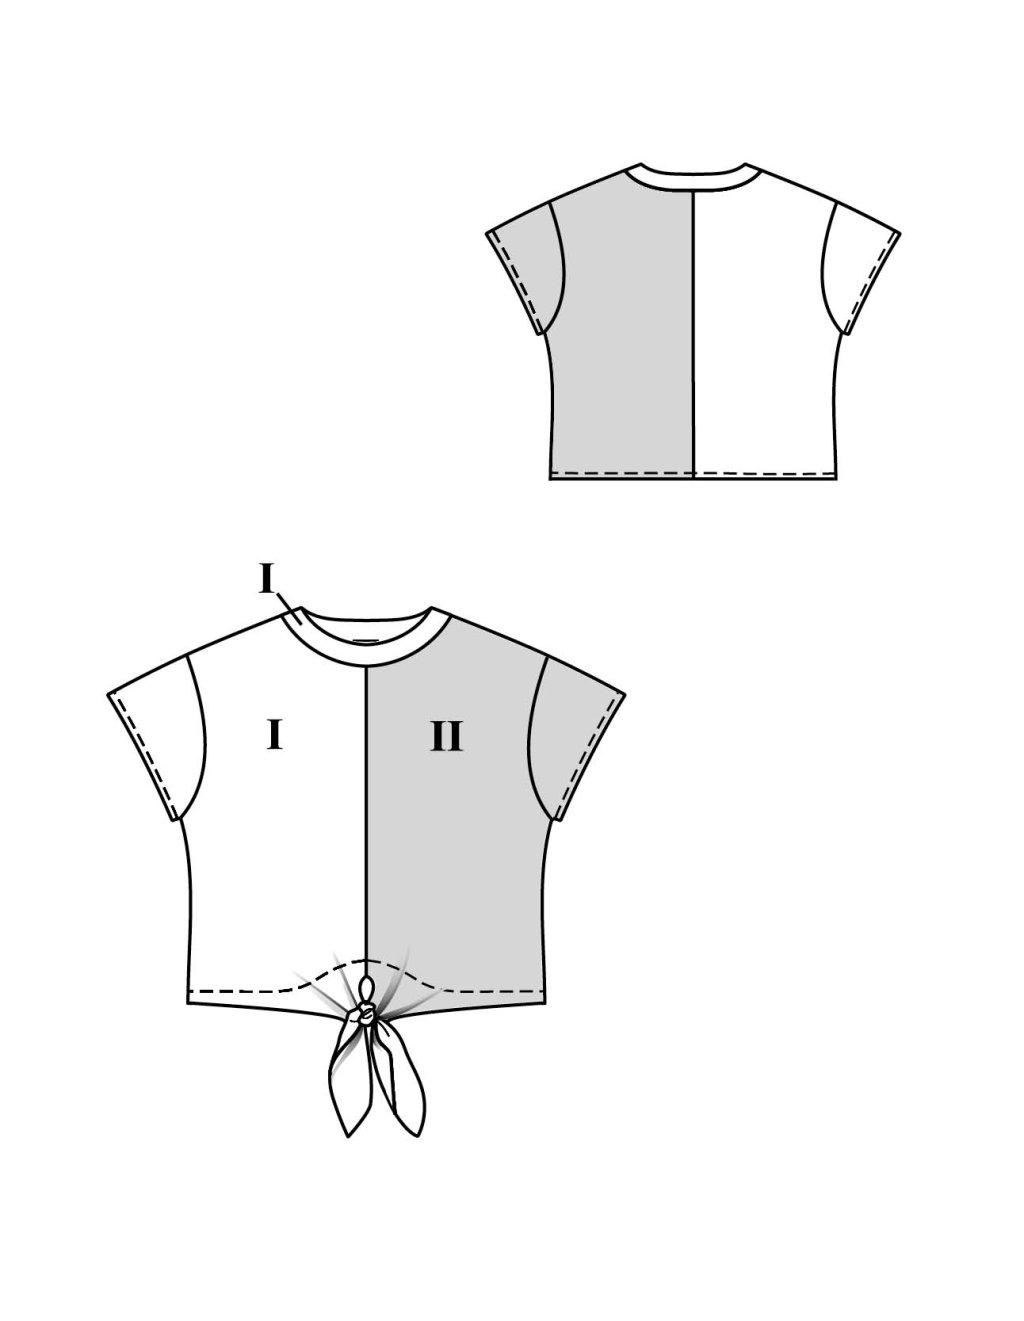 3B Tričko s krátkými rukávy